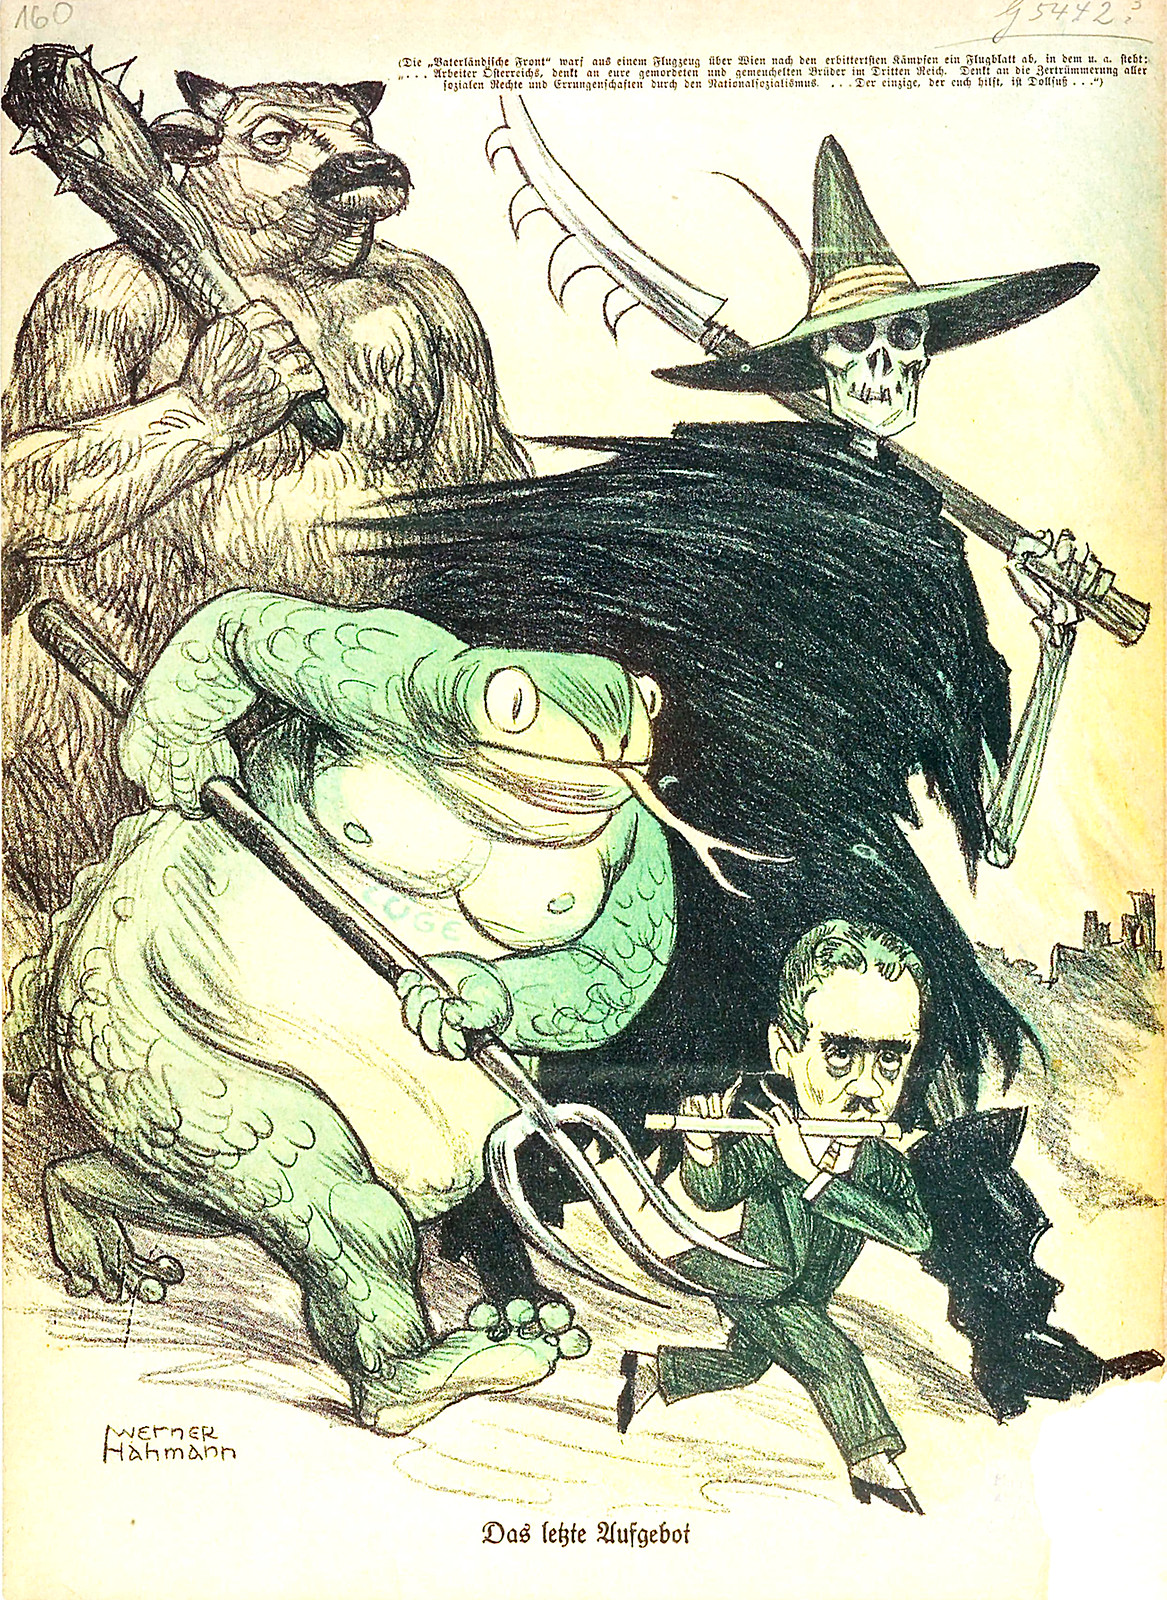 Kladderadatsch, Illustration by Werner Hahmann, 1934